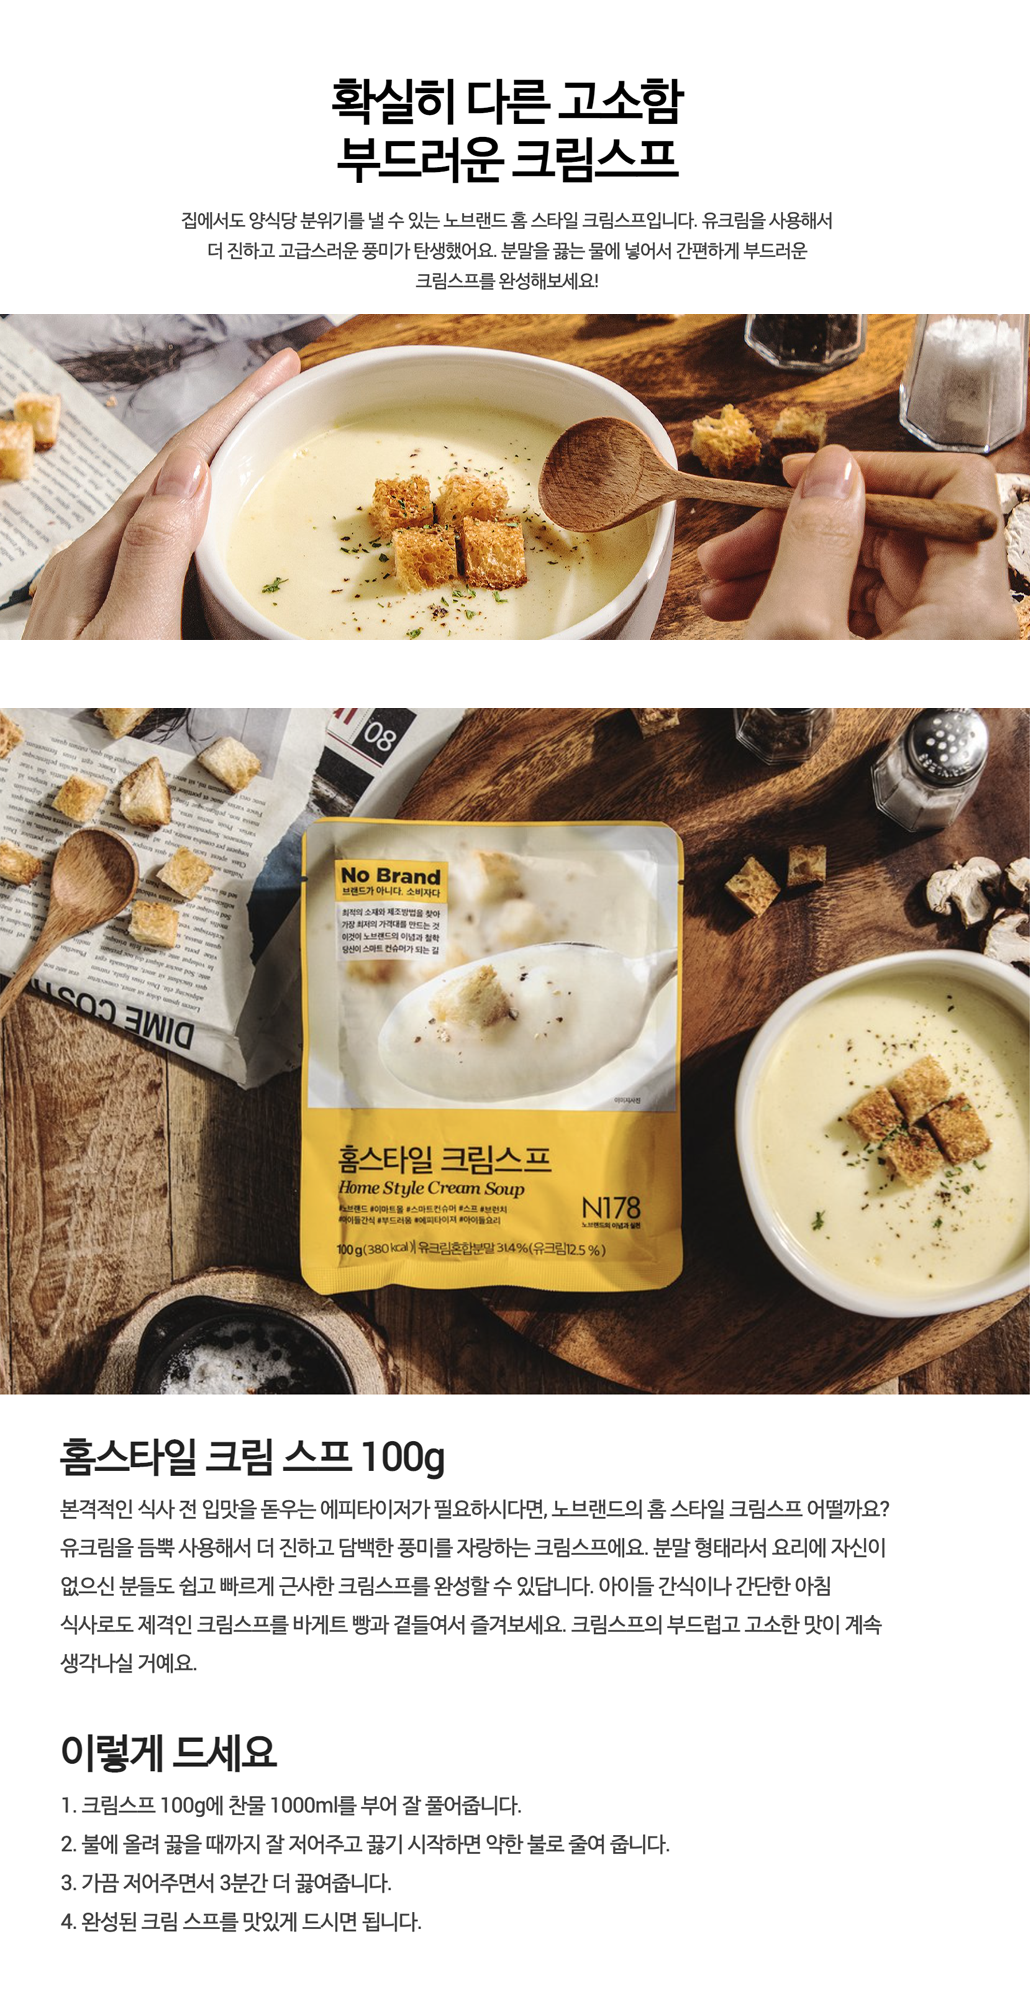 韓國食品-[No Brand] 忌廉湯粉 100g